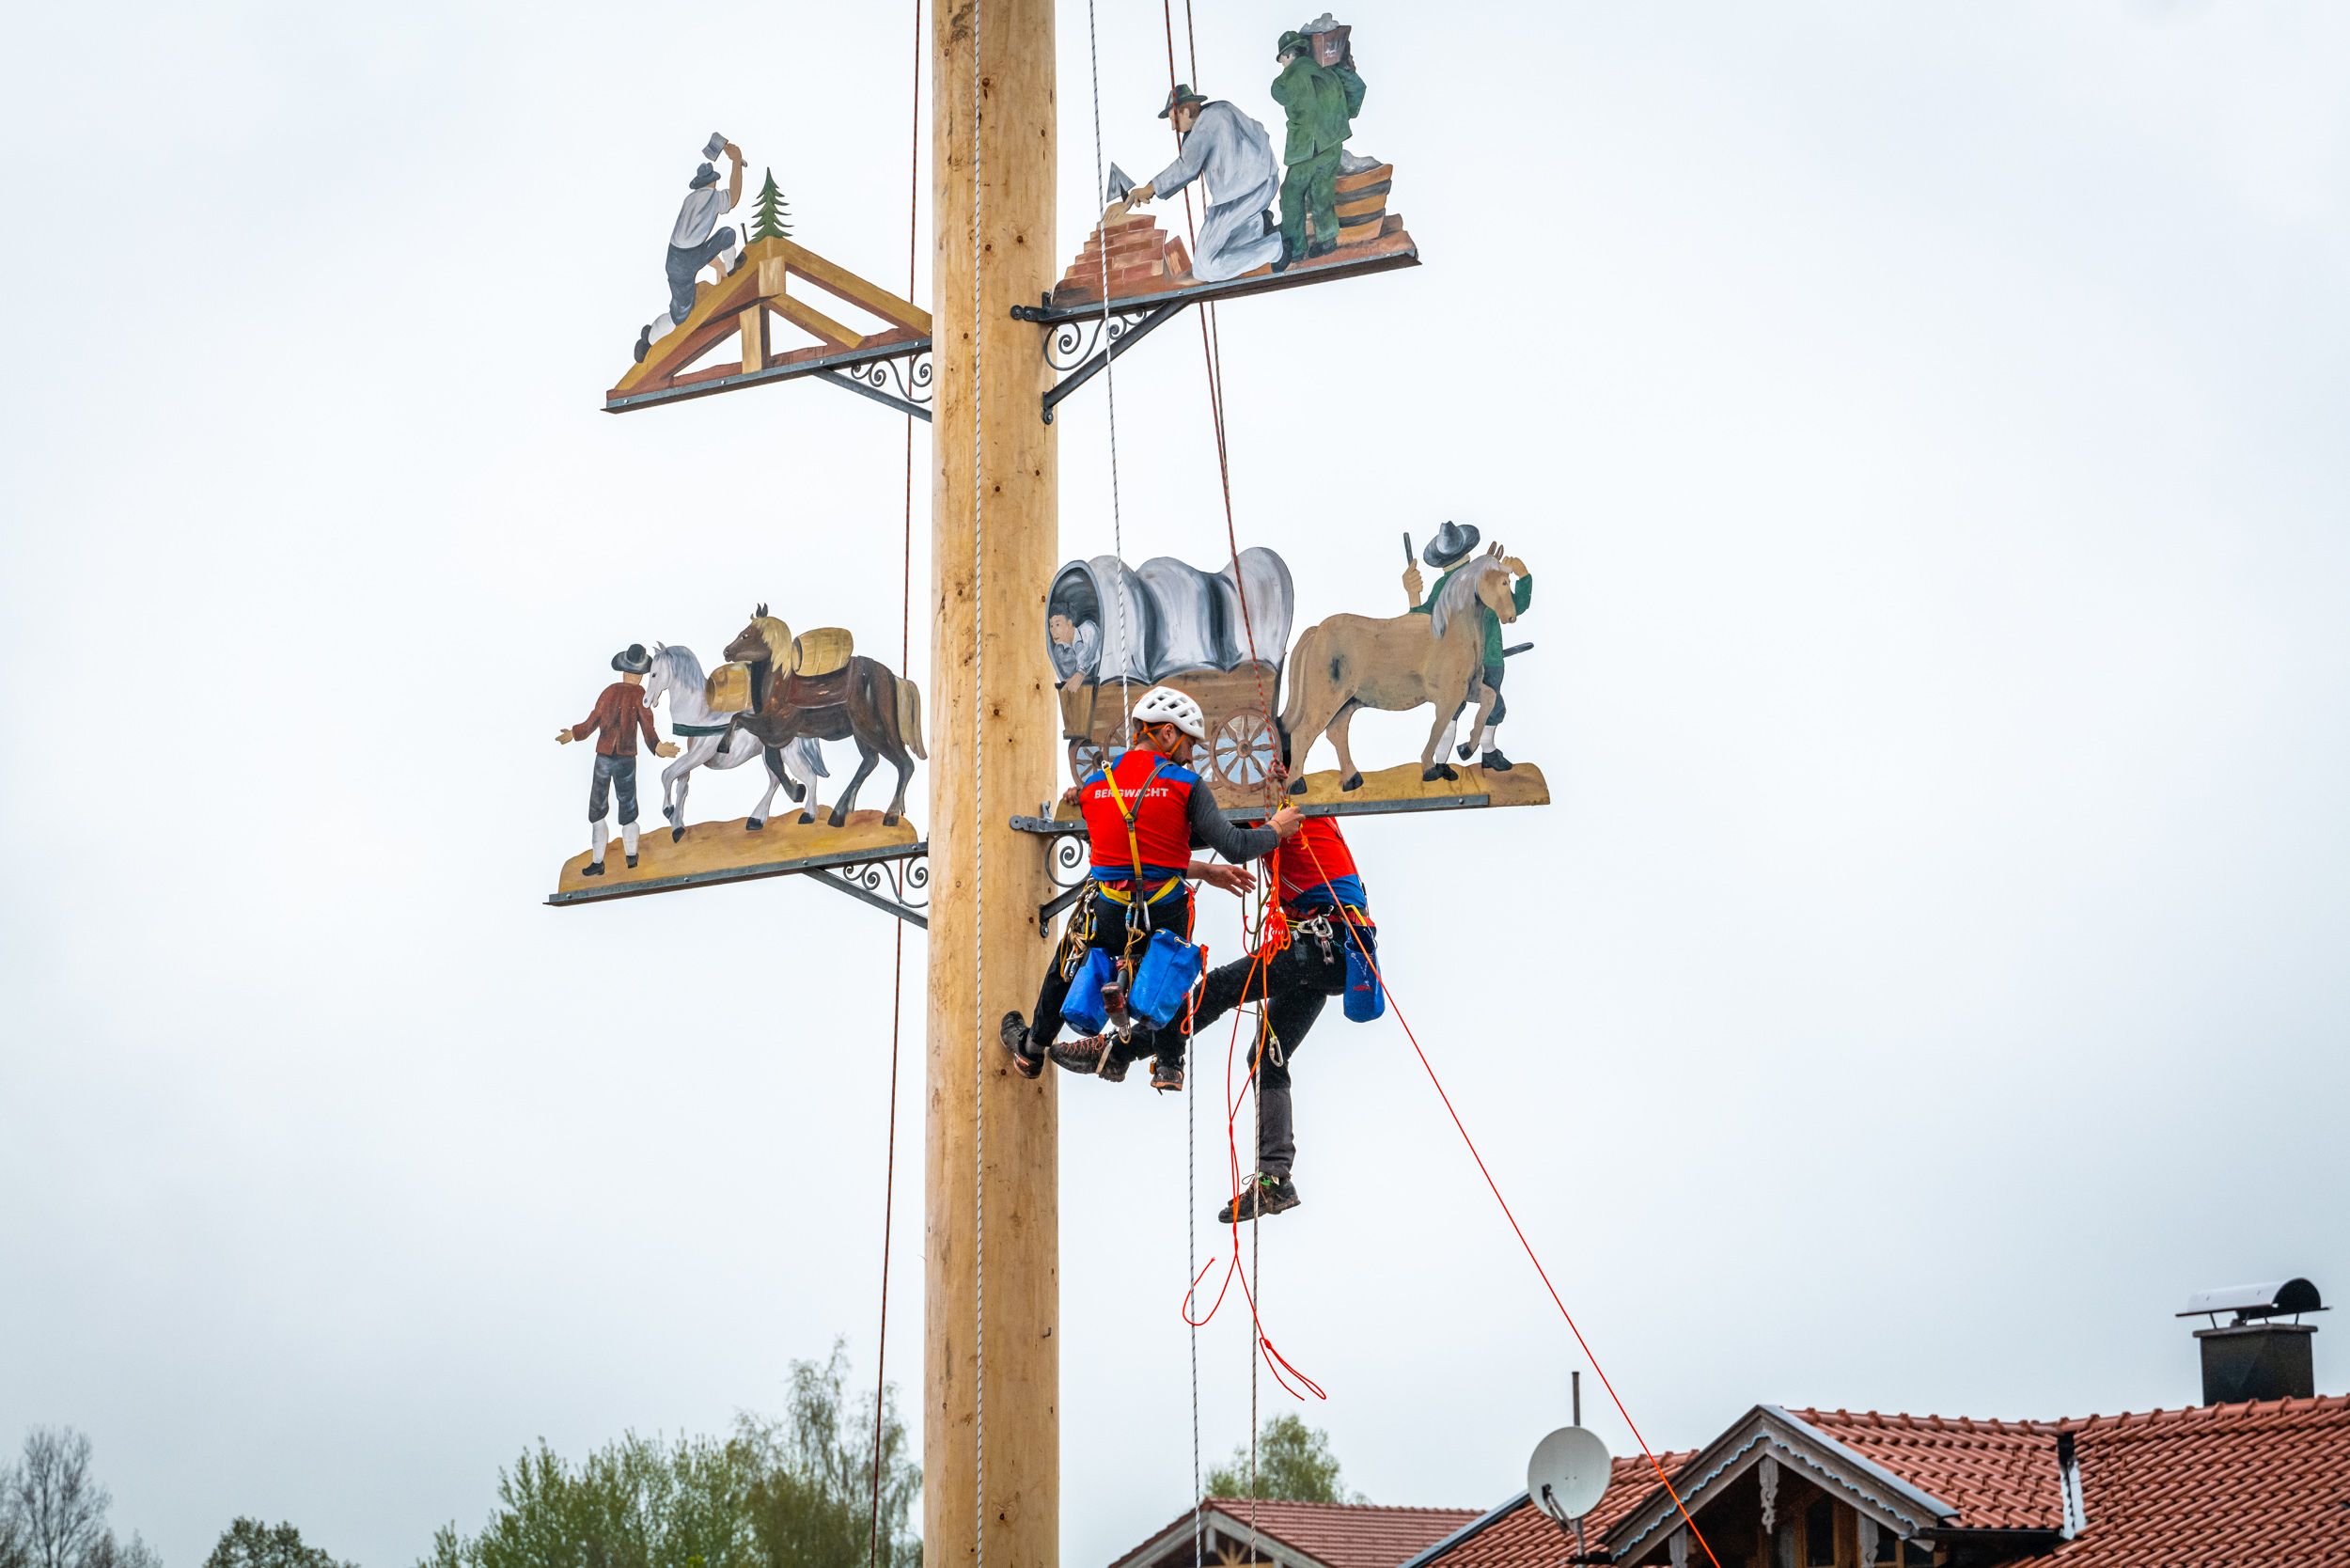 Hoch oben am Maibaum bringen Bergwachtler die Motivfiguren an, gesichert mit Seilen